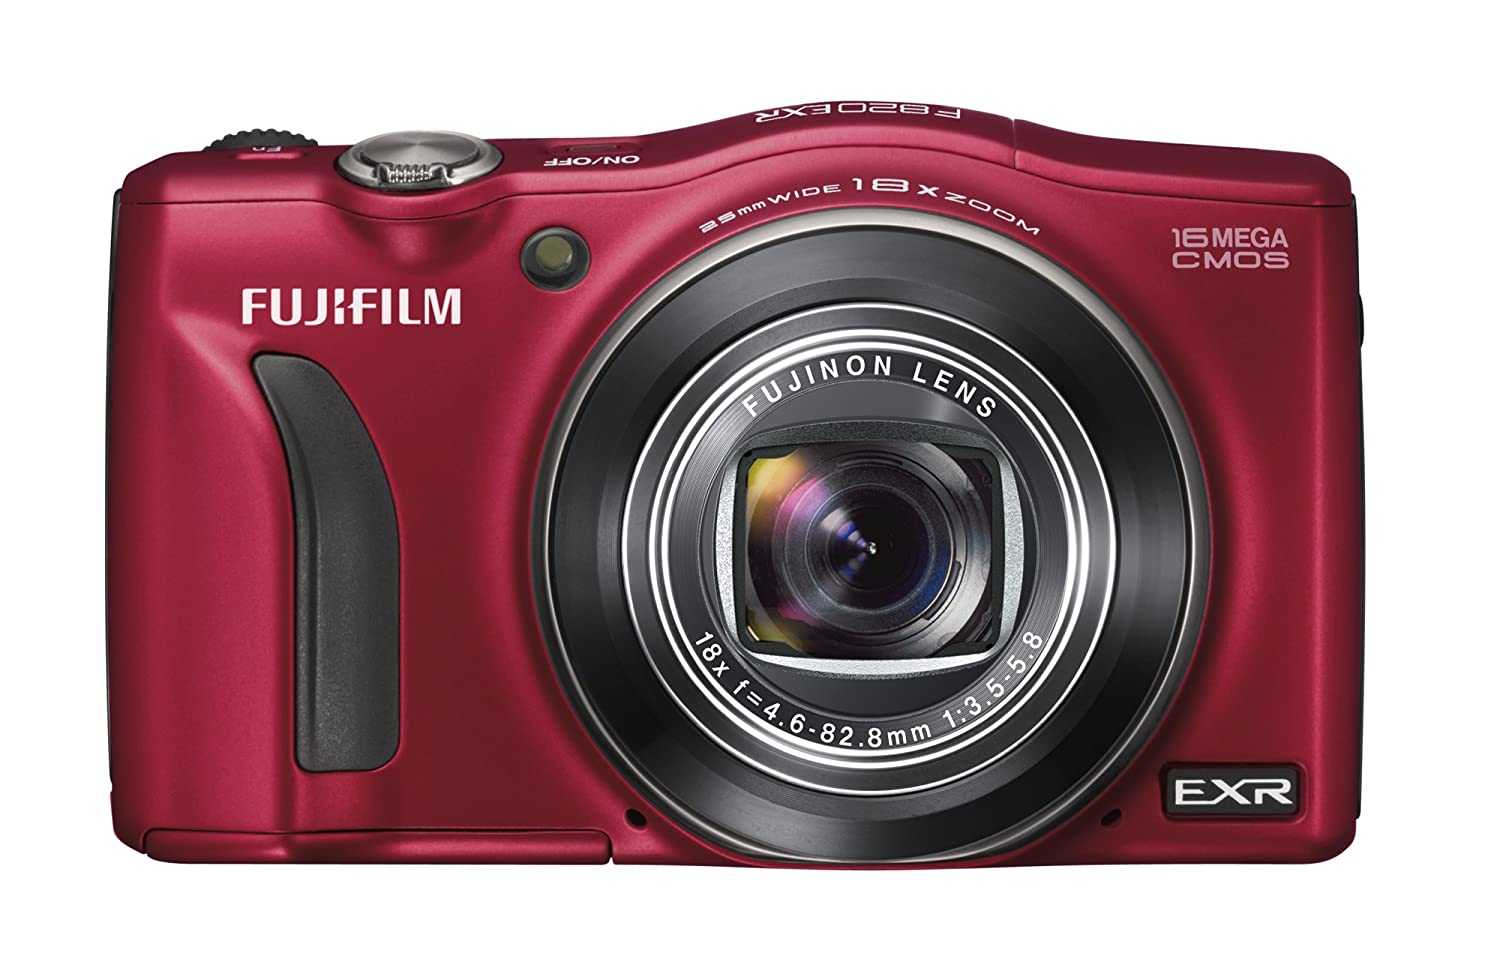 Цифровой фотоаппарат Fujifilm FinePix F550EXR - подробные характеристики обзоры видео фото Цены в интернет-магазинах где можно купить цифровую фотоаппарат Fujifilm FinePix F550EXR